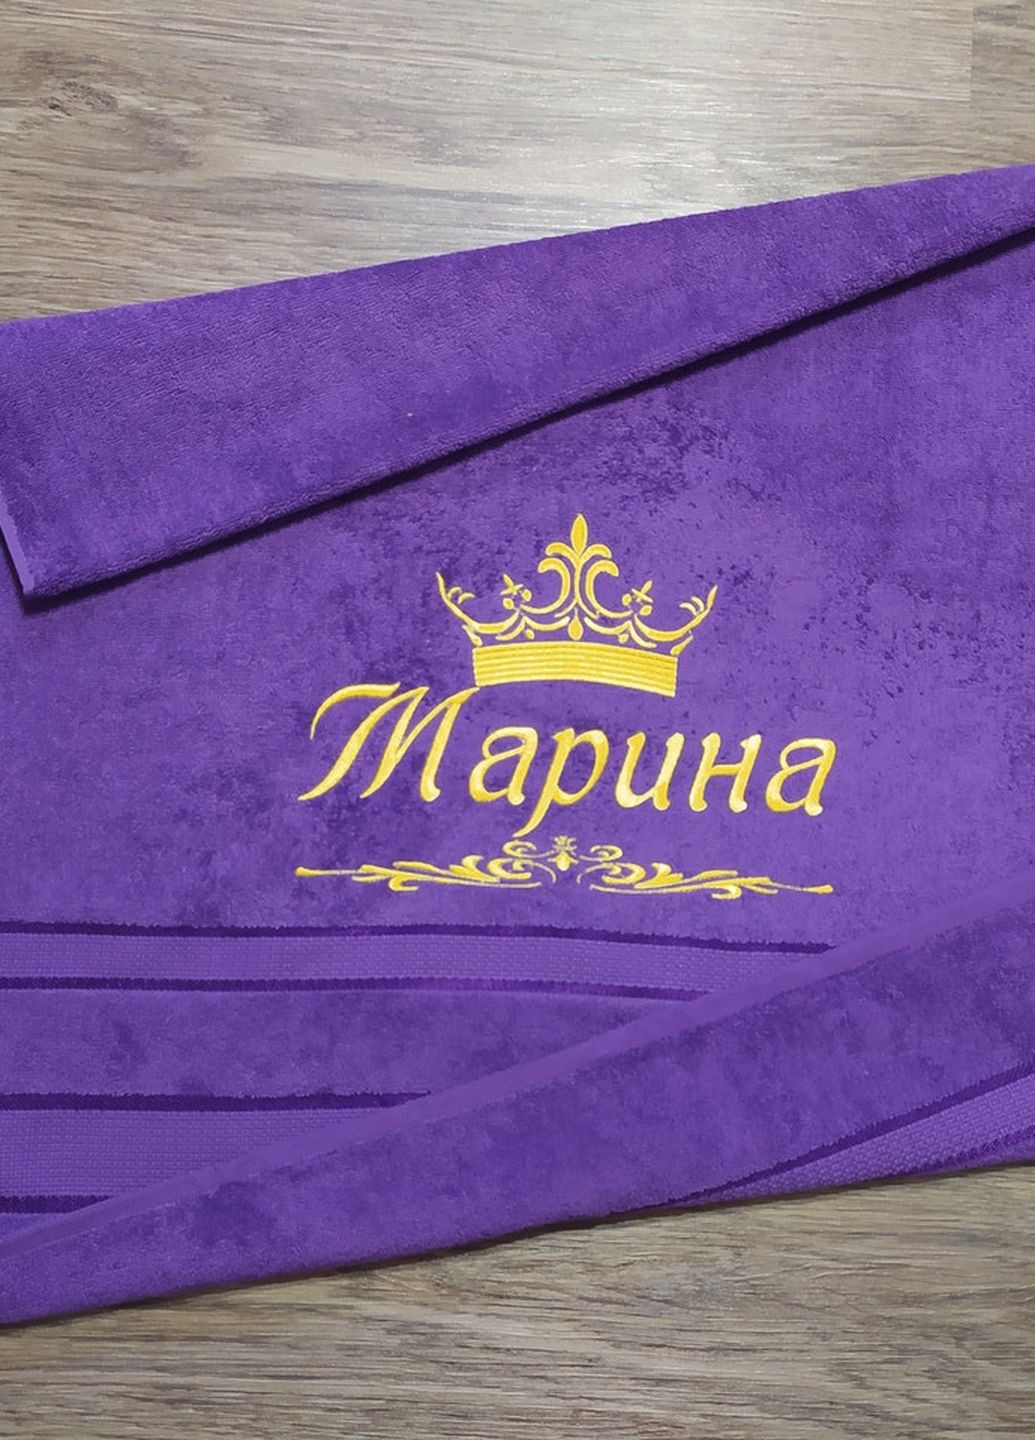 No Brand полотенце с именной вышивкой махровое банное 70*140 фиолетовый марина 03918 однотонный фиолетовый производство - Украина